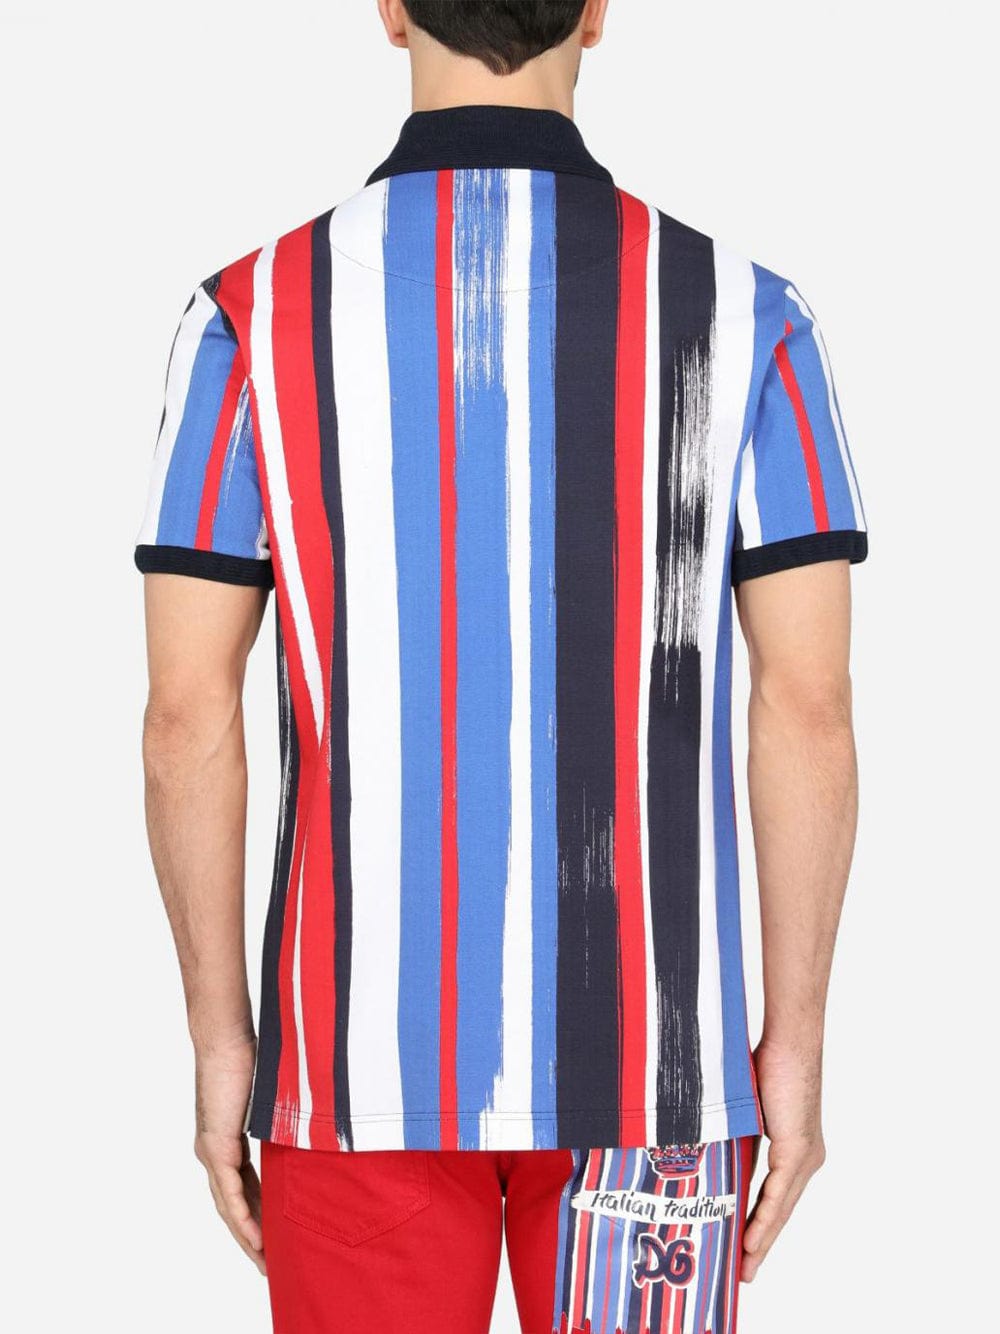 Dolce & Gabbana Striped Polo Shirt